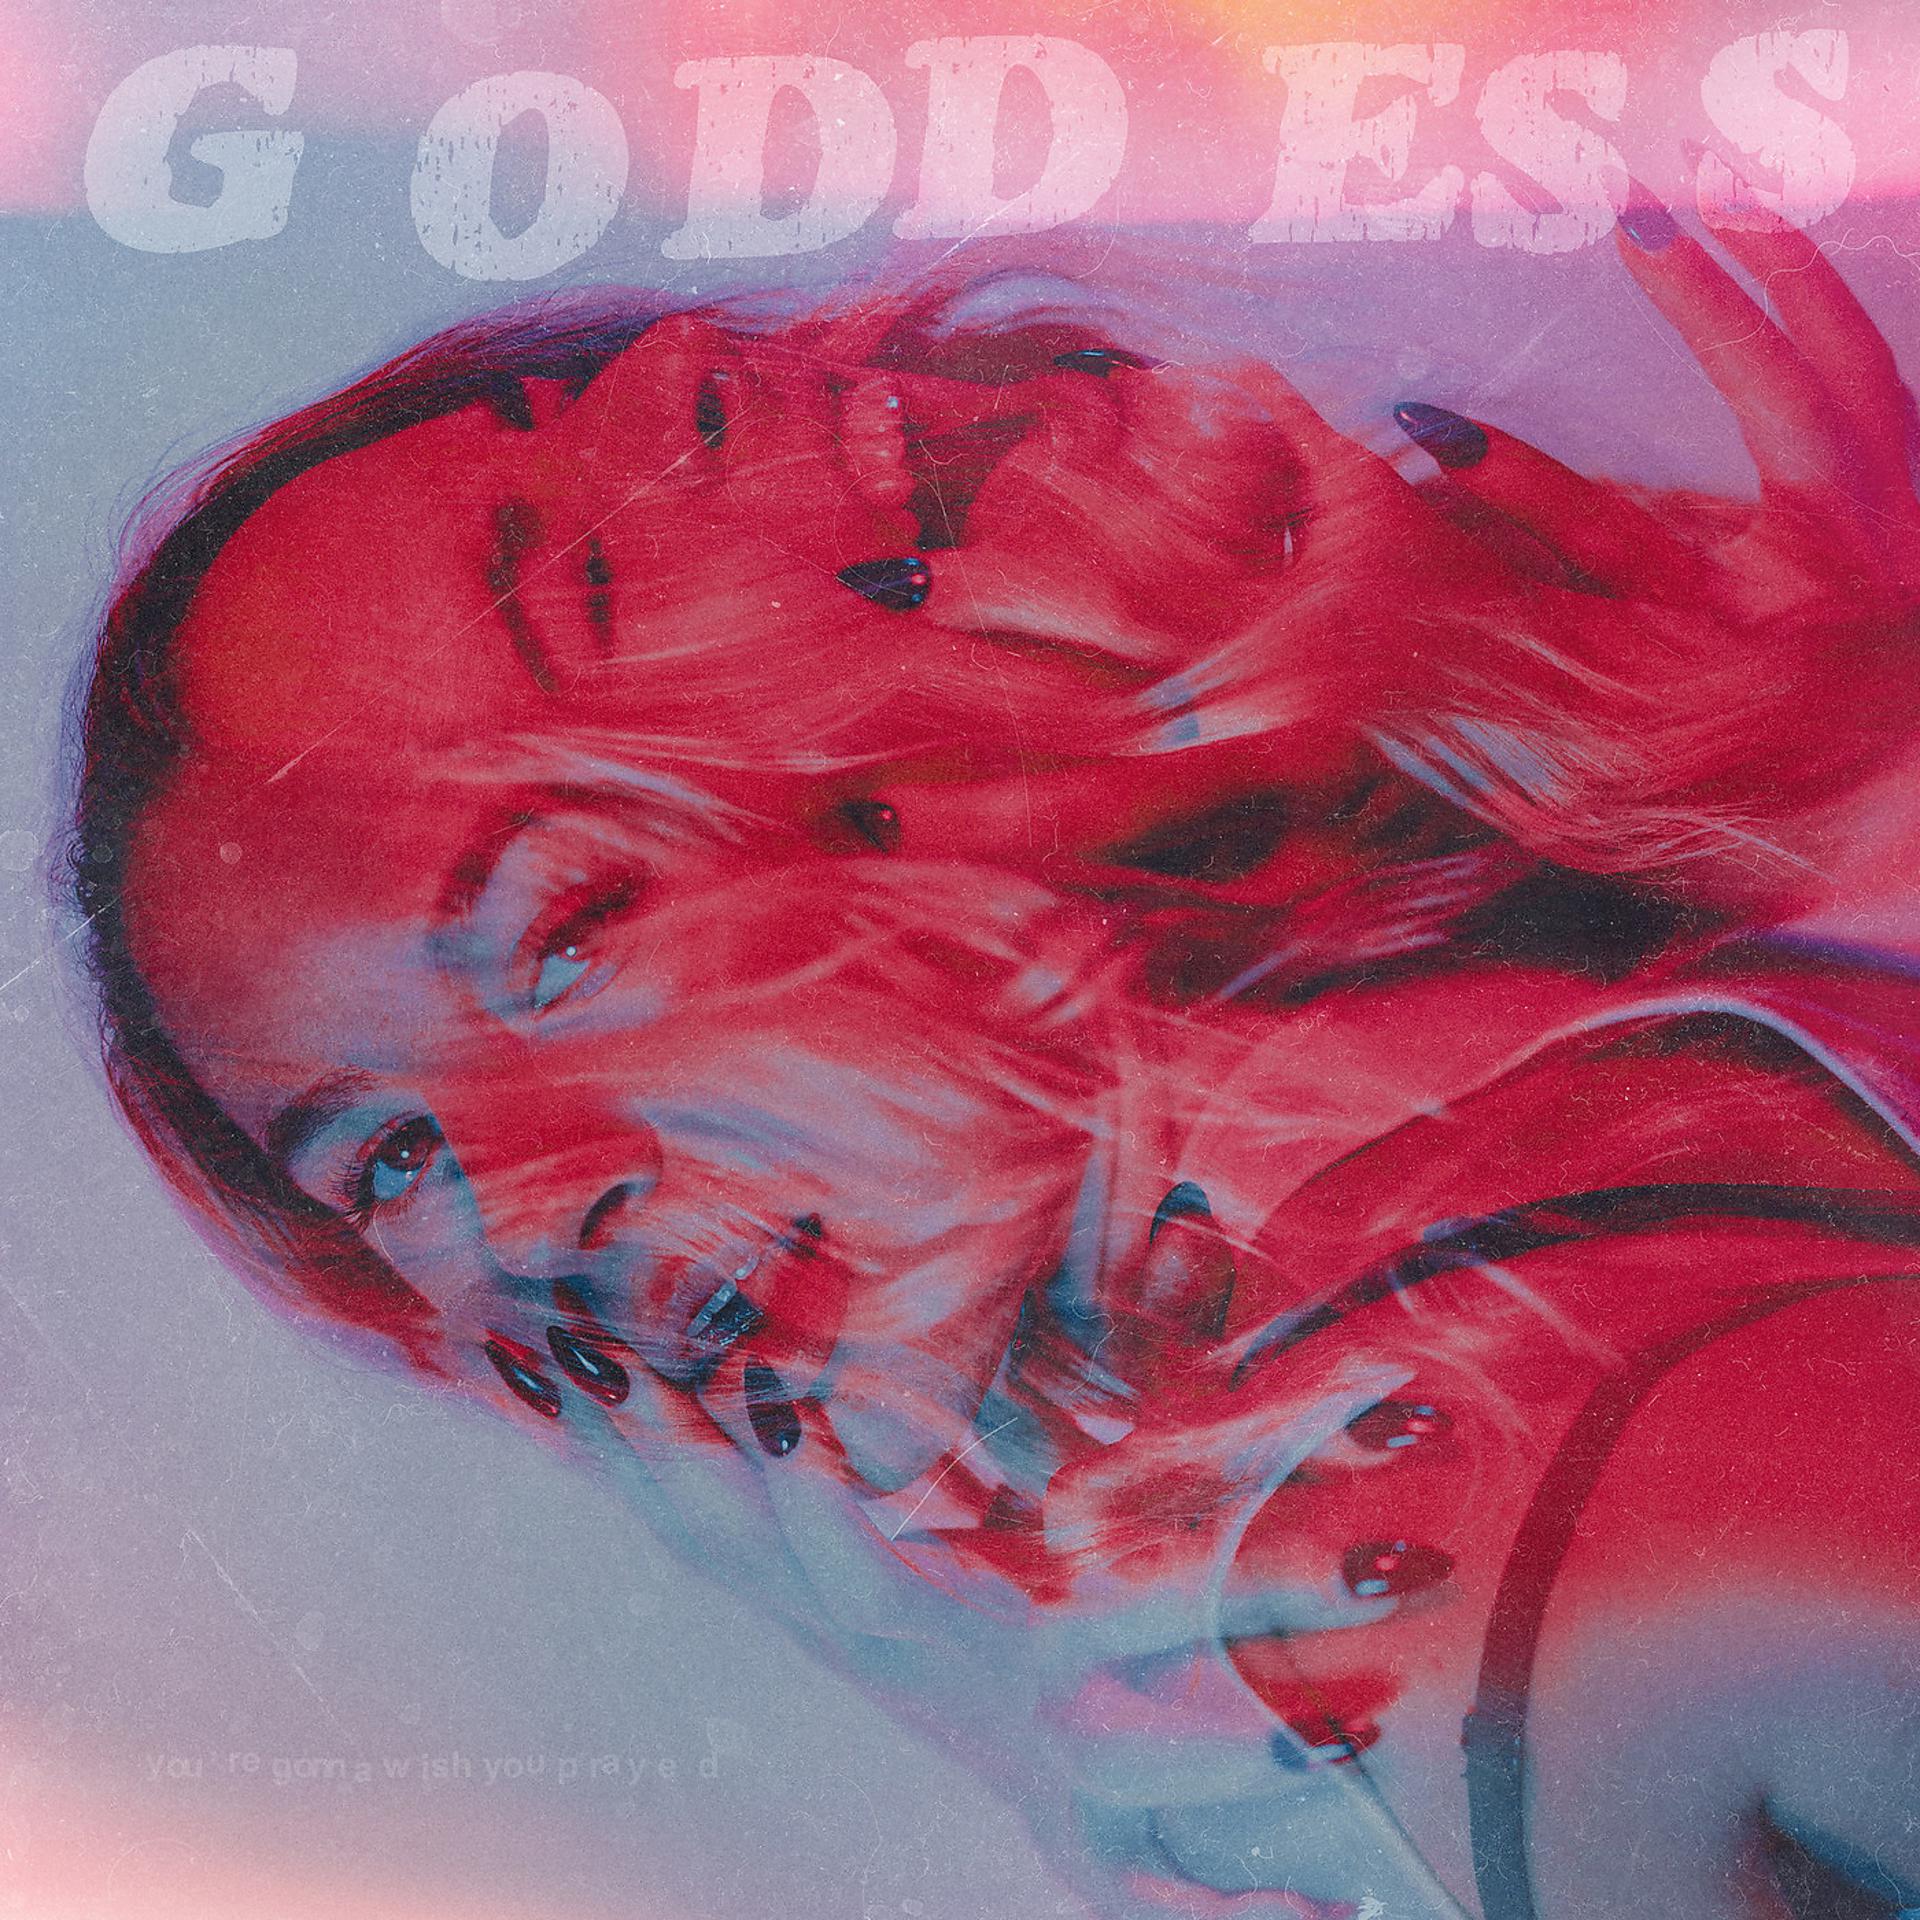 Постер альбома Goddess